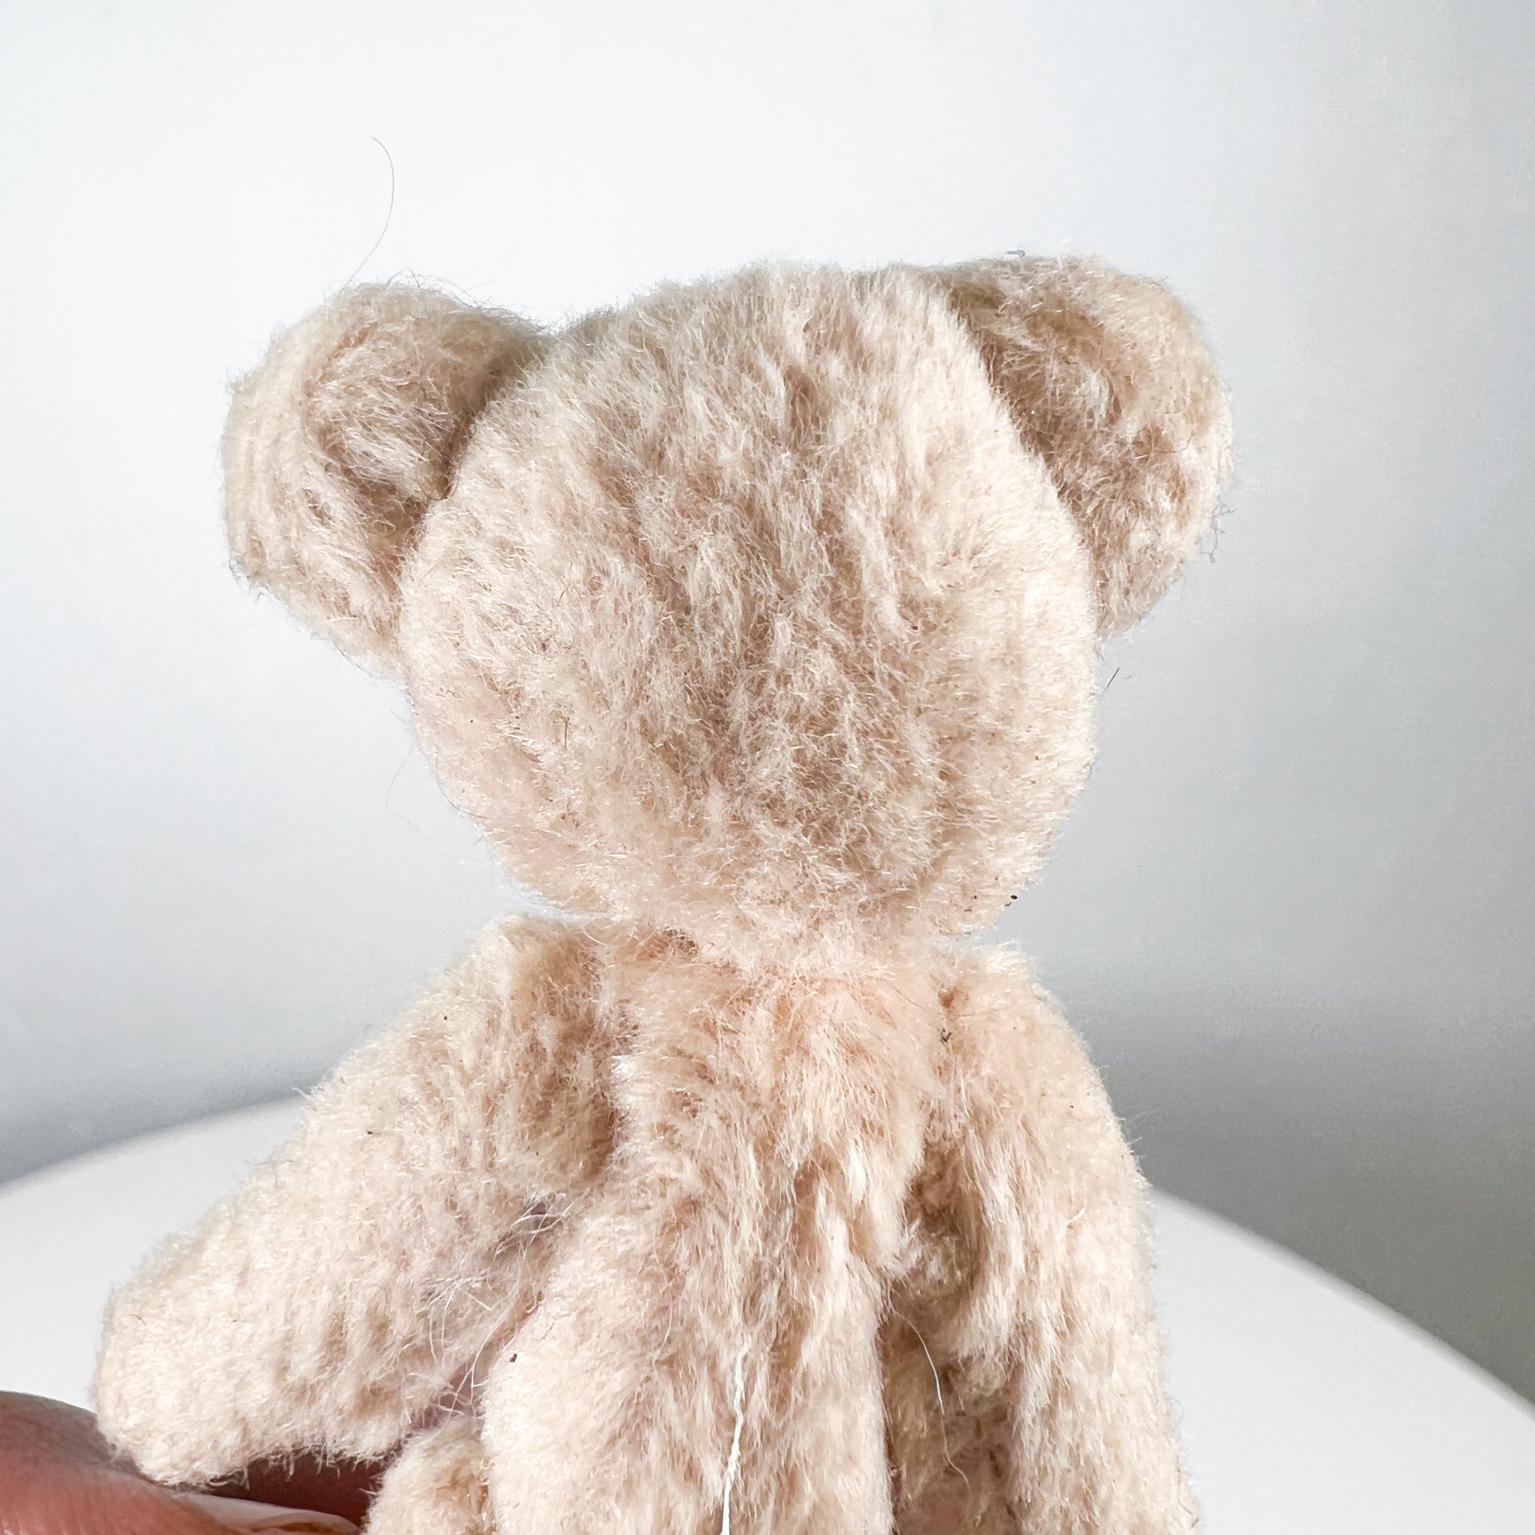 Mid 20th Century Tiny Baby Teddy Bear Soft Huggable Vintage 6